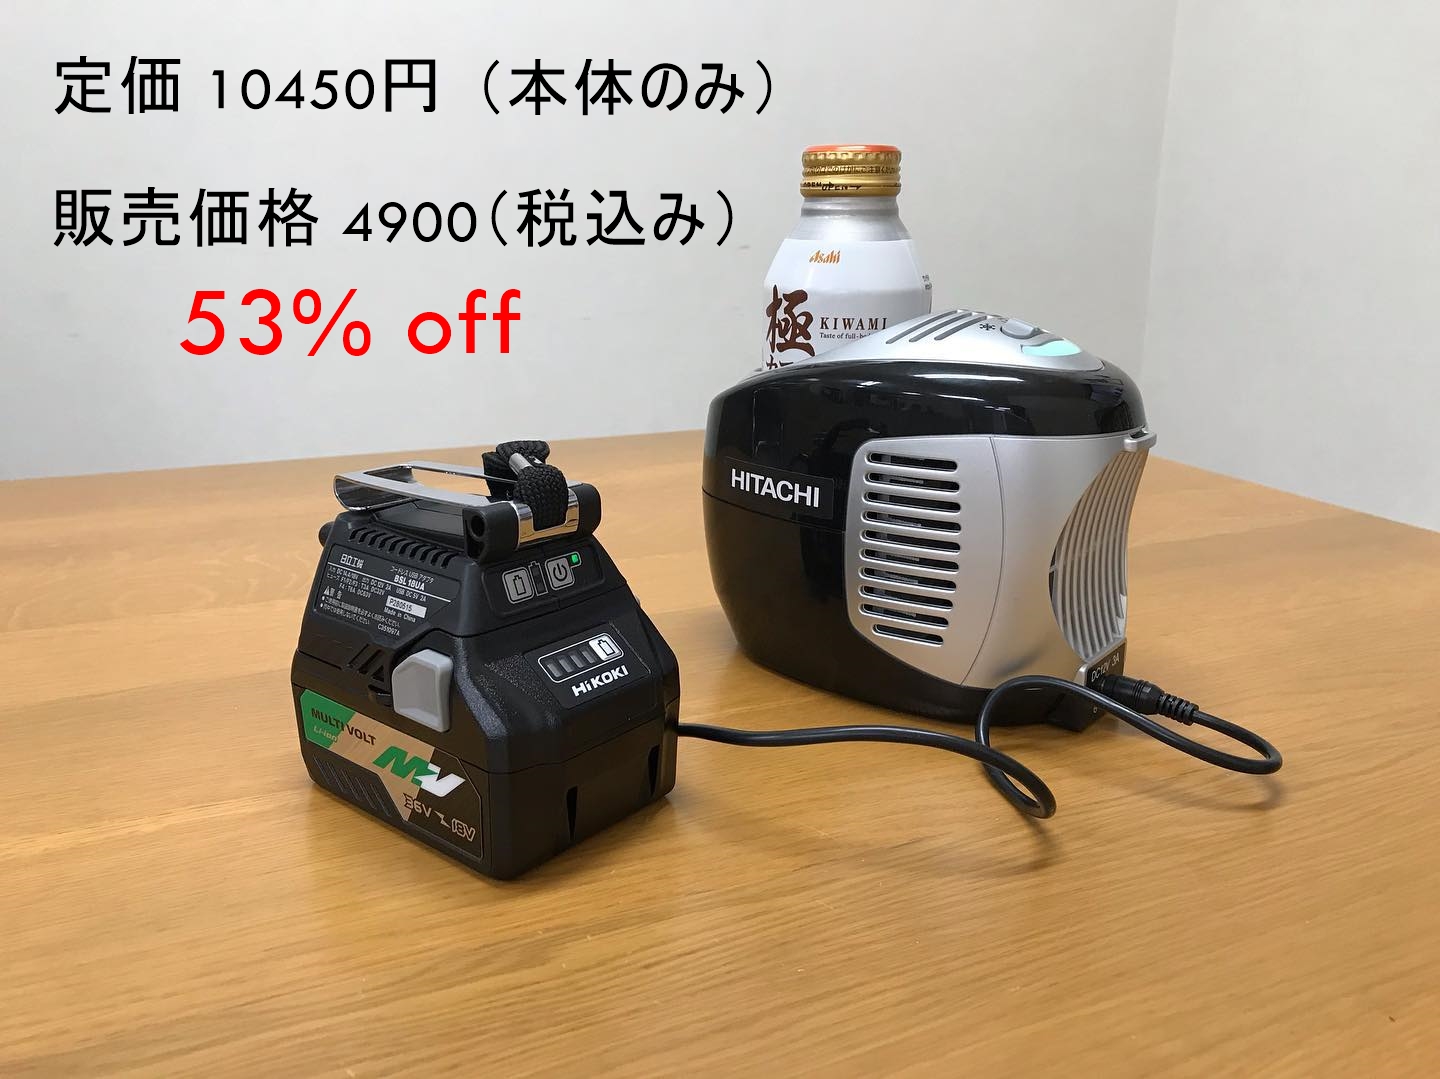 630円 素晴らしい価格 HiKOKI コードレス冷温ホルダー